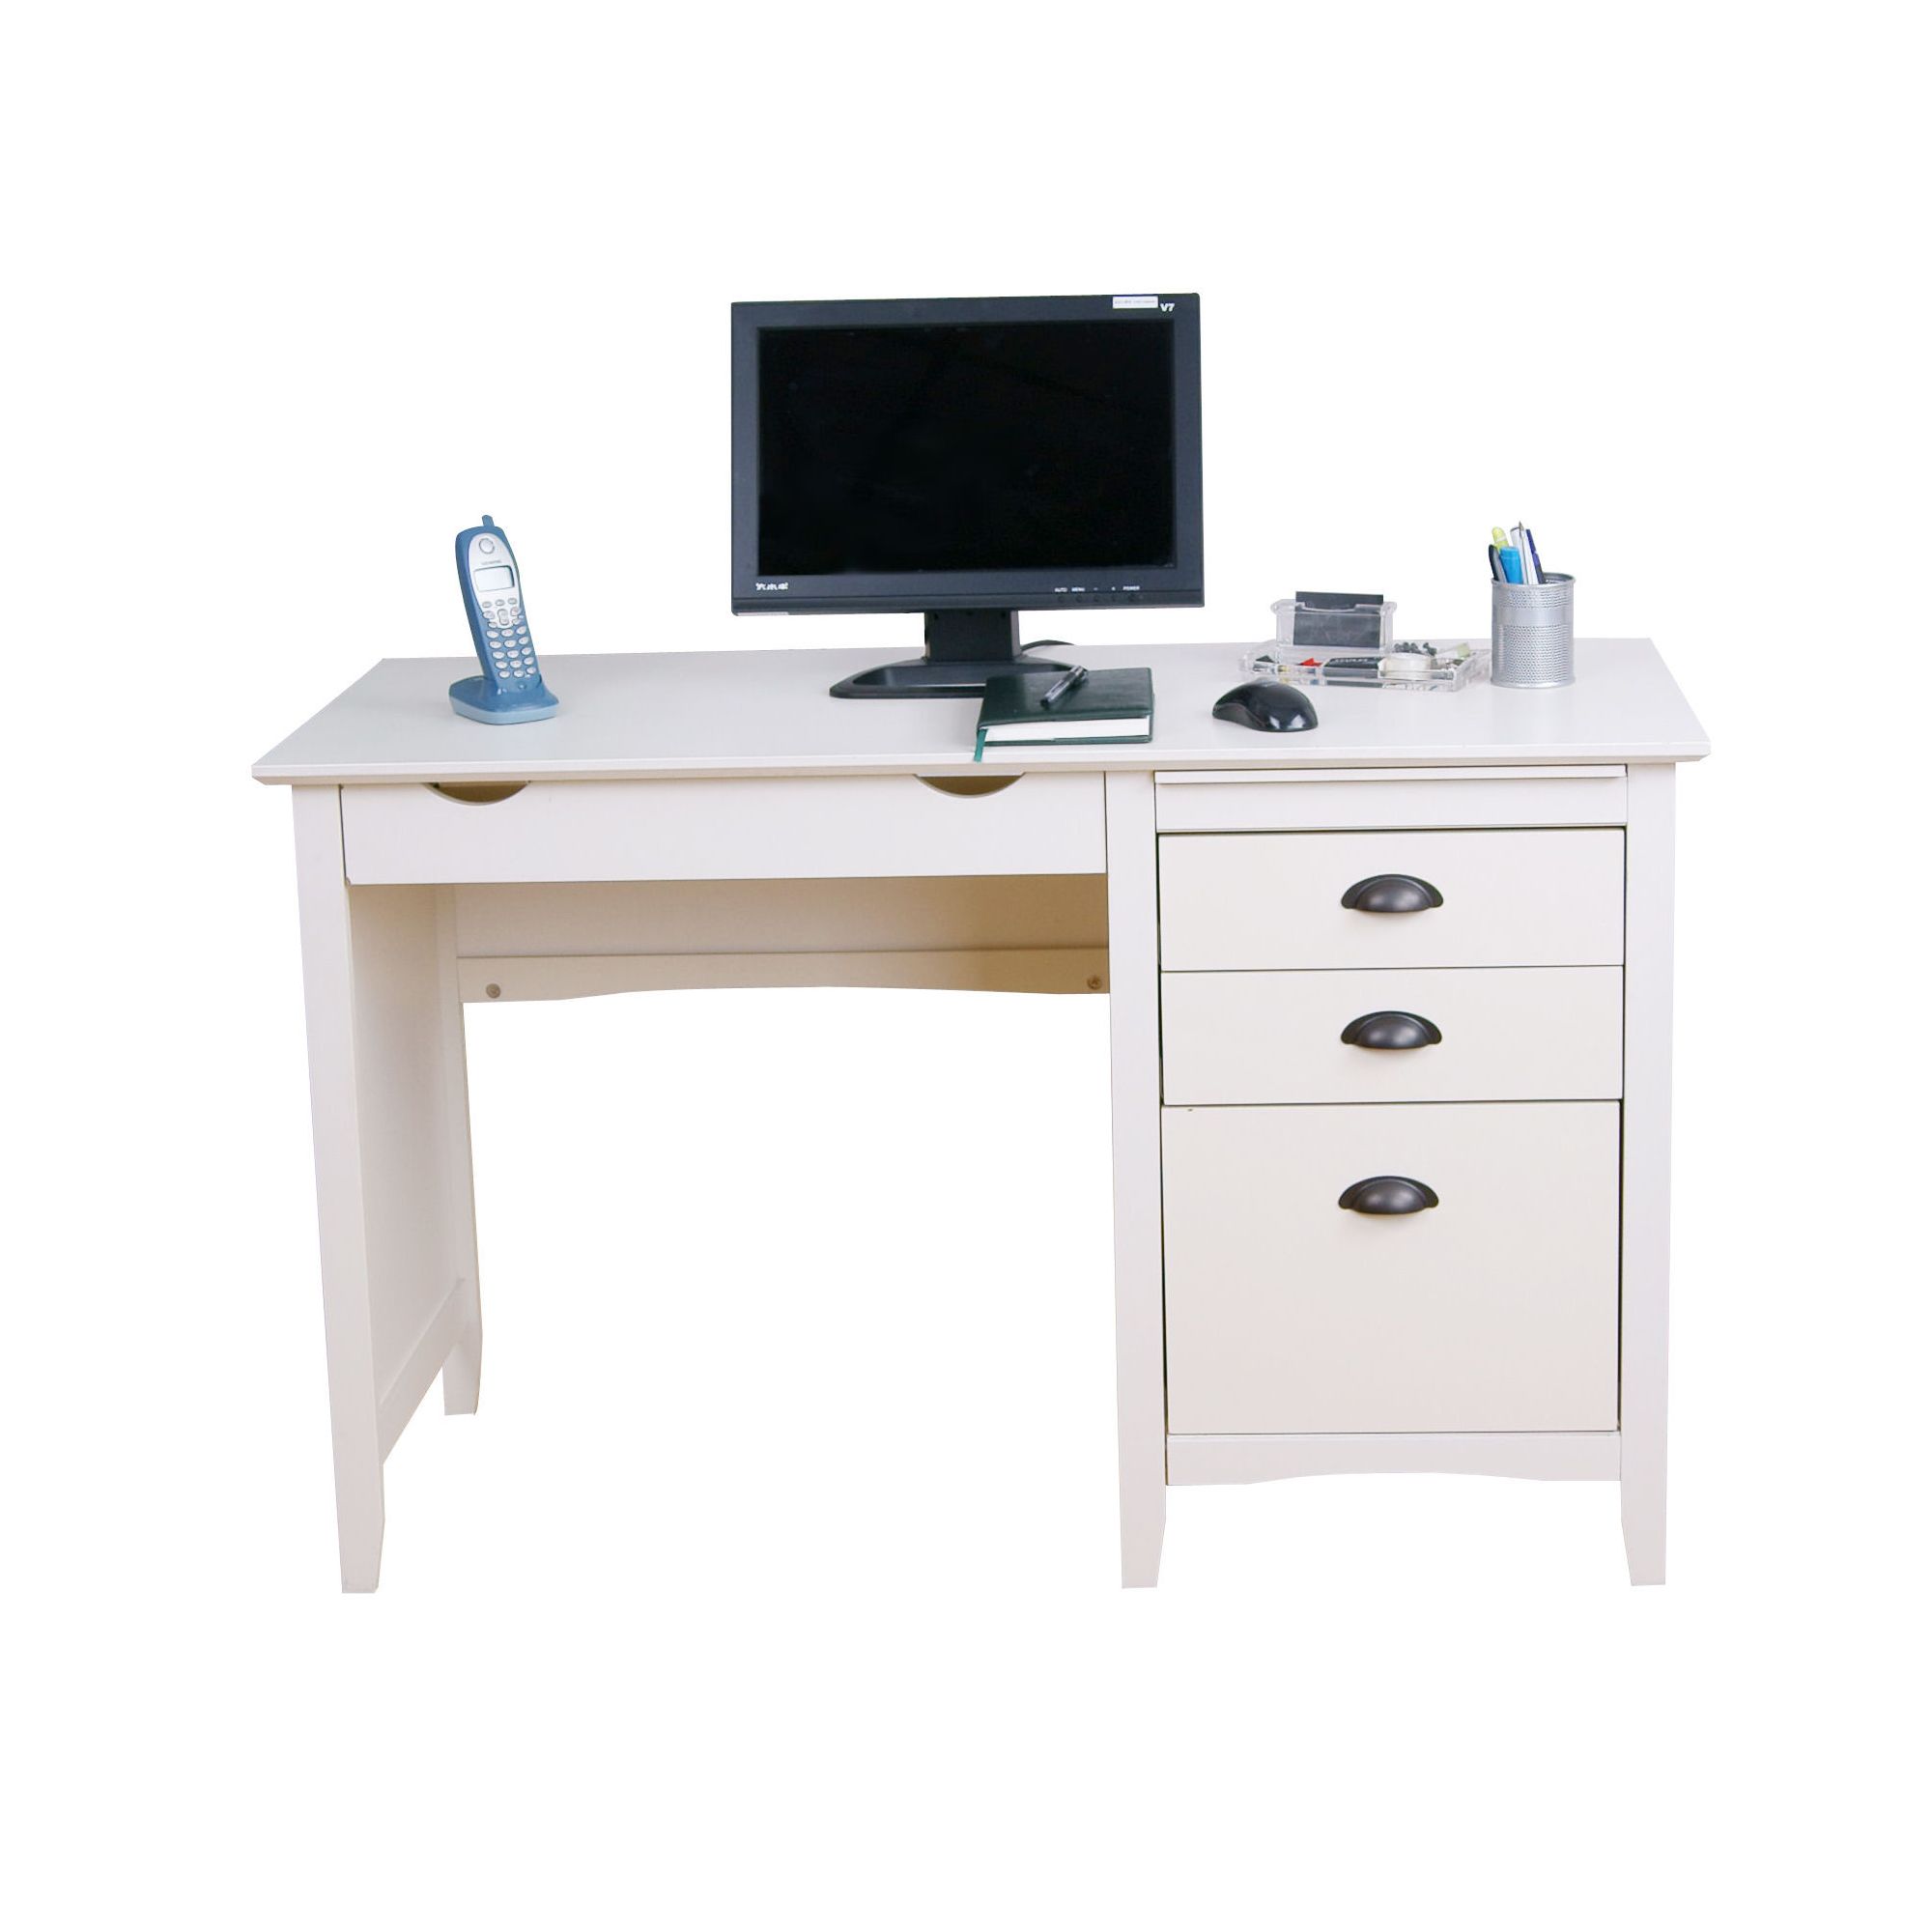 Modal New England Desk at Tesco Direct